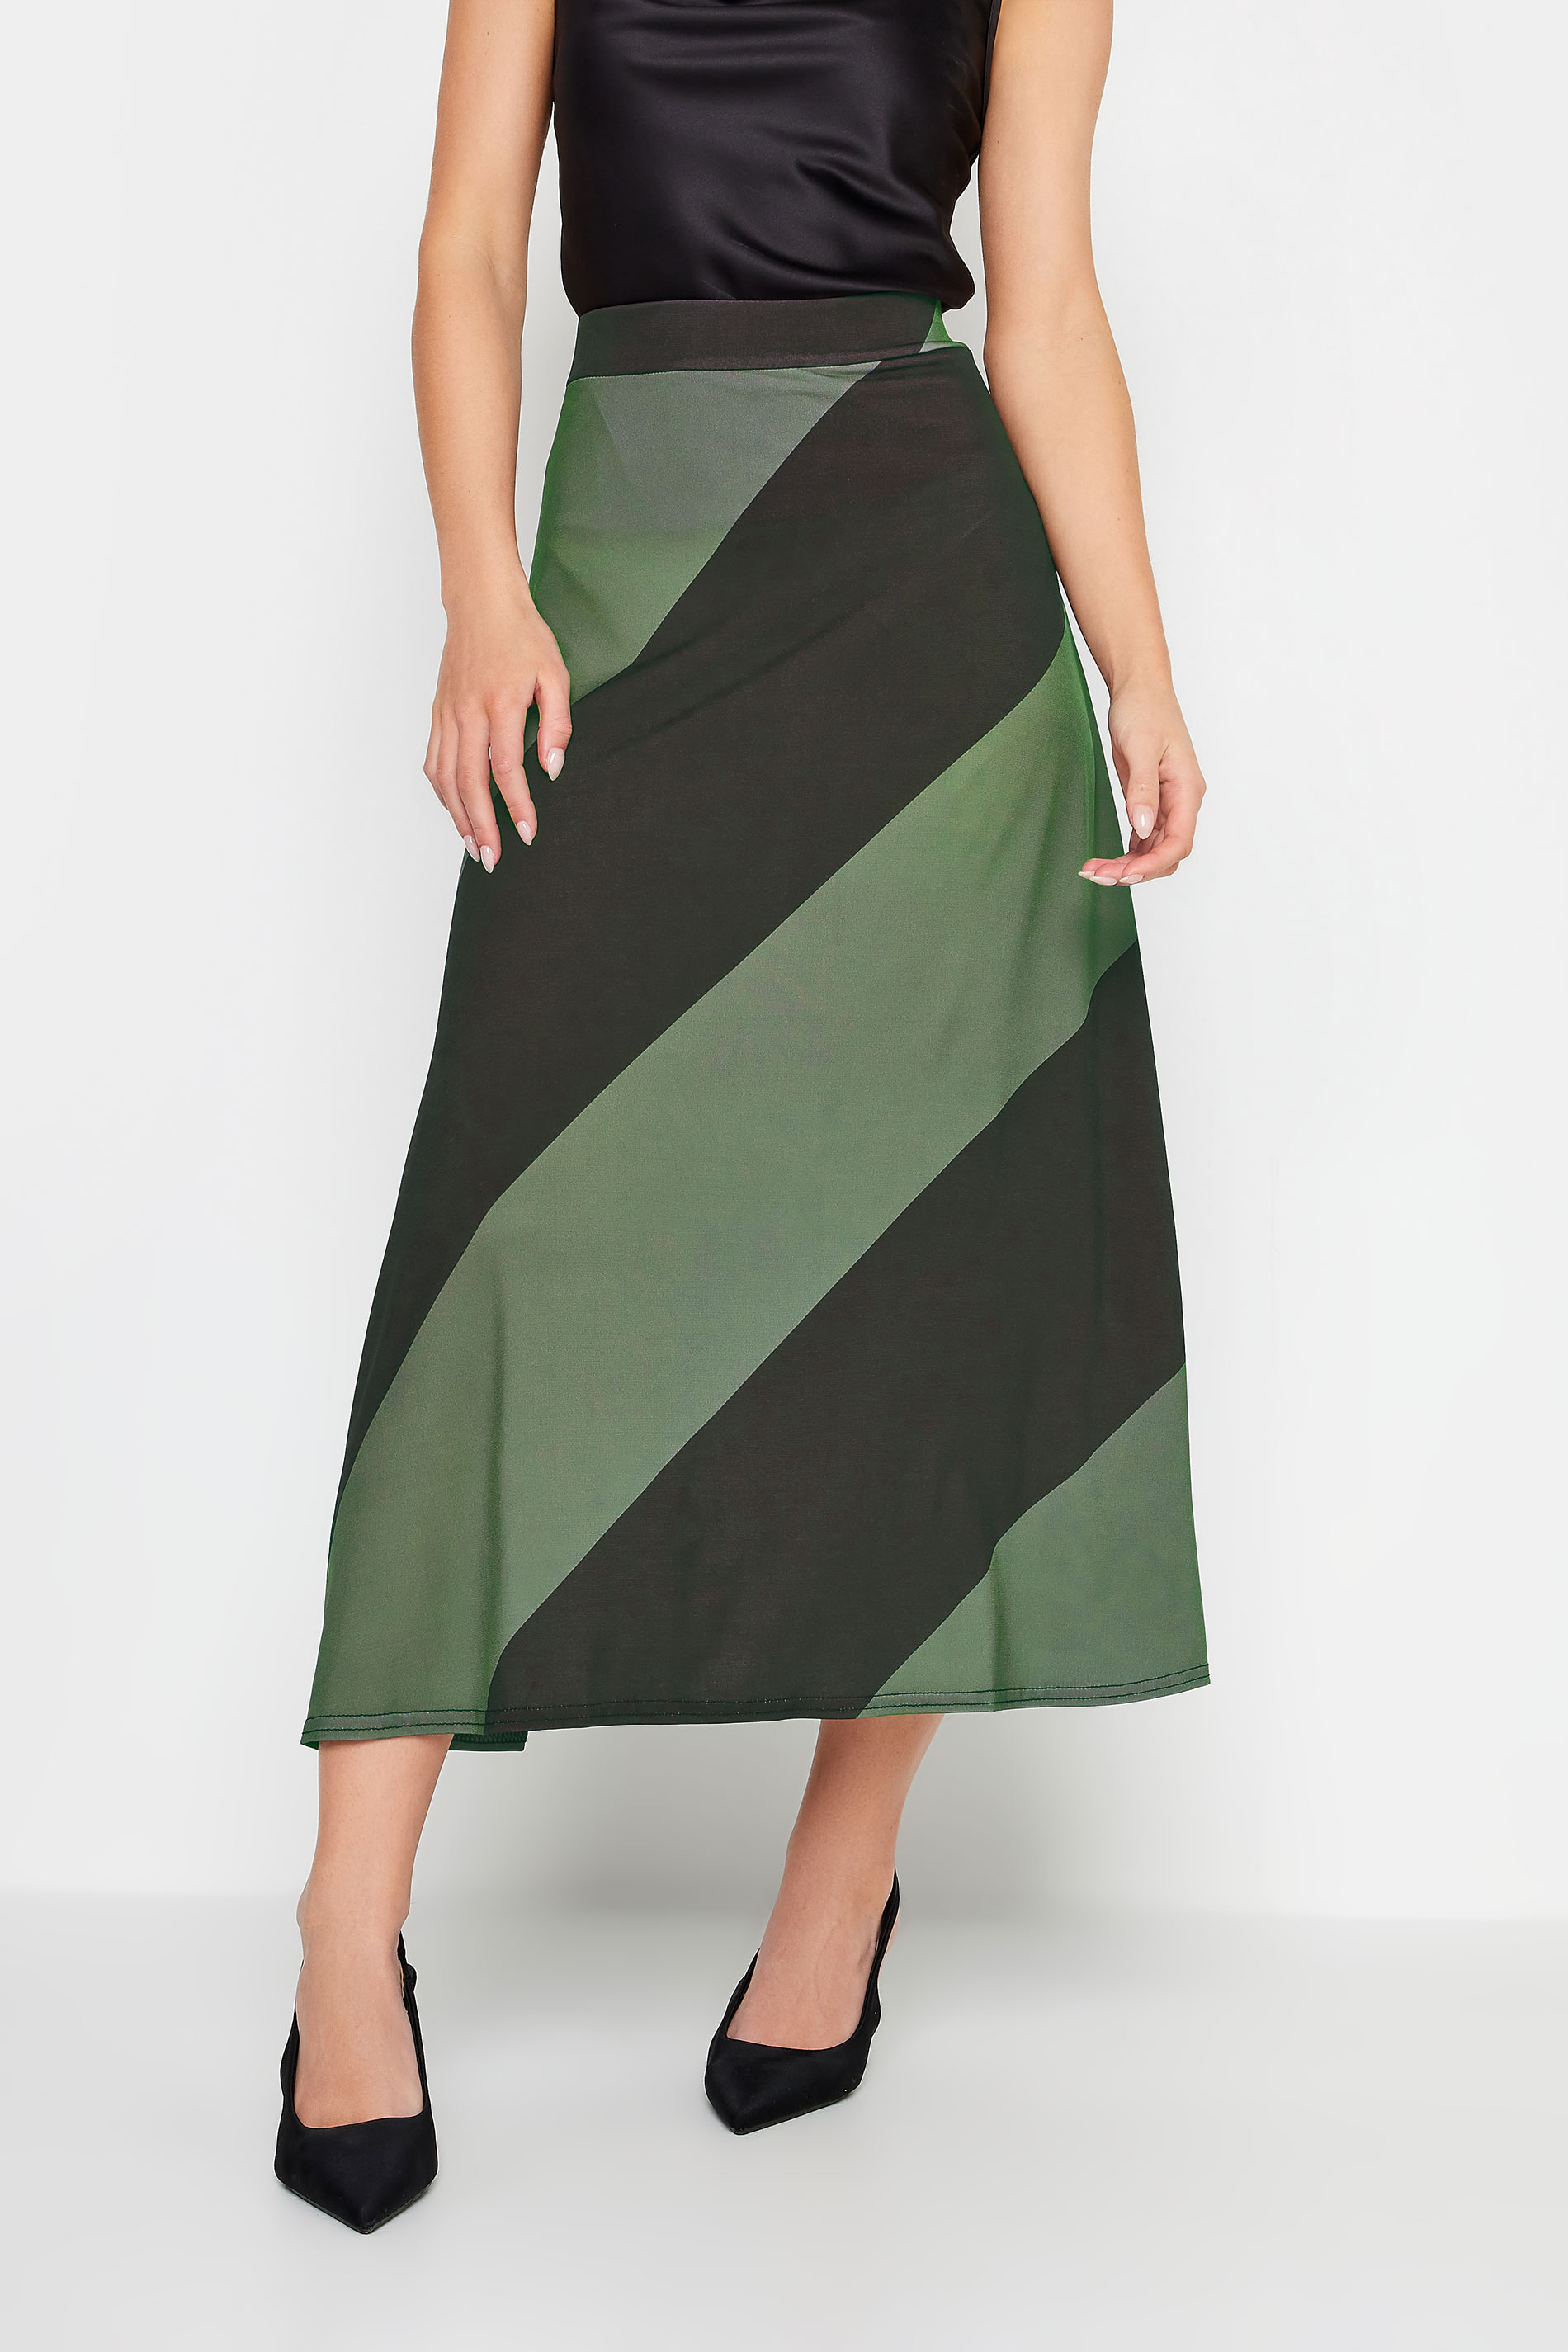 PixieGirl Green Diagonal Stripe Maxi Skirt | PixieGirl 2